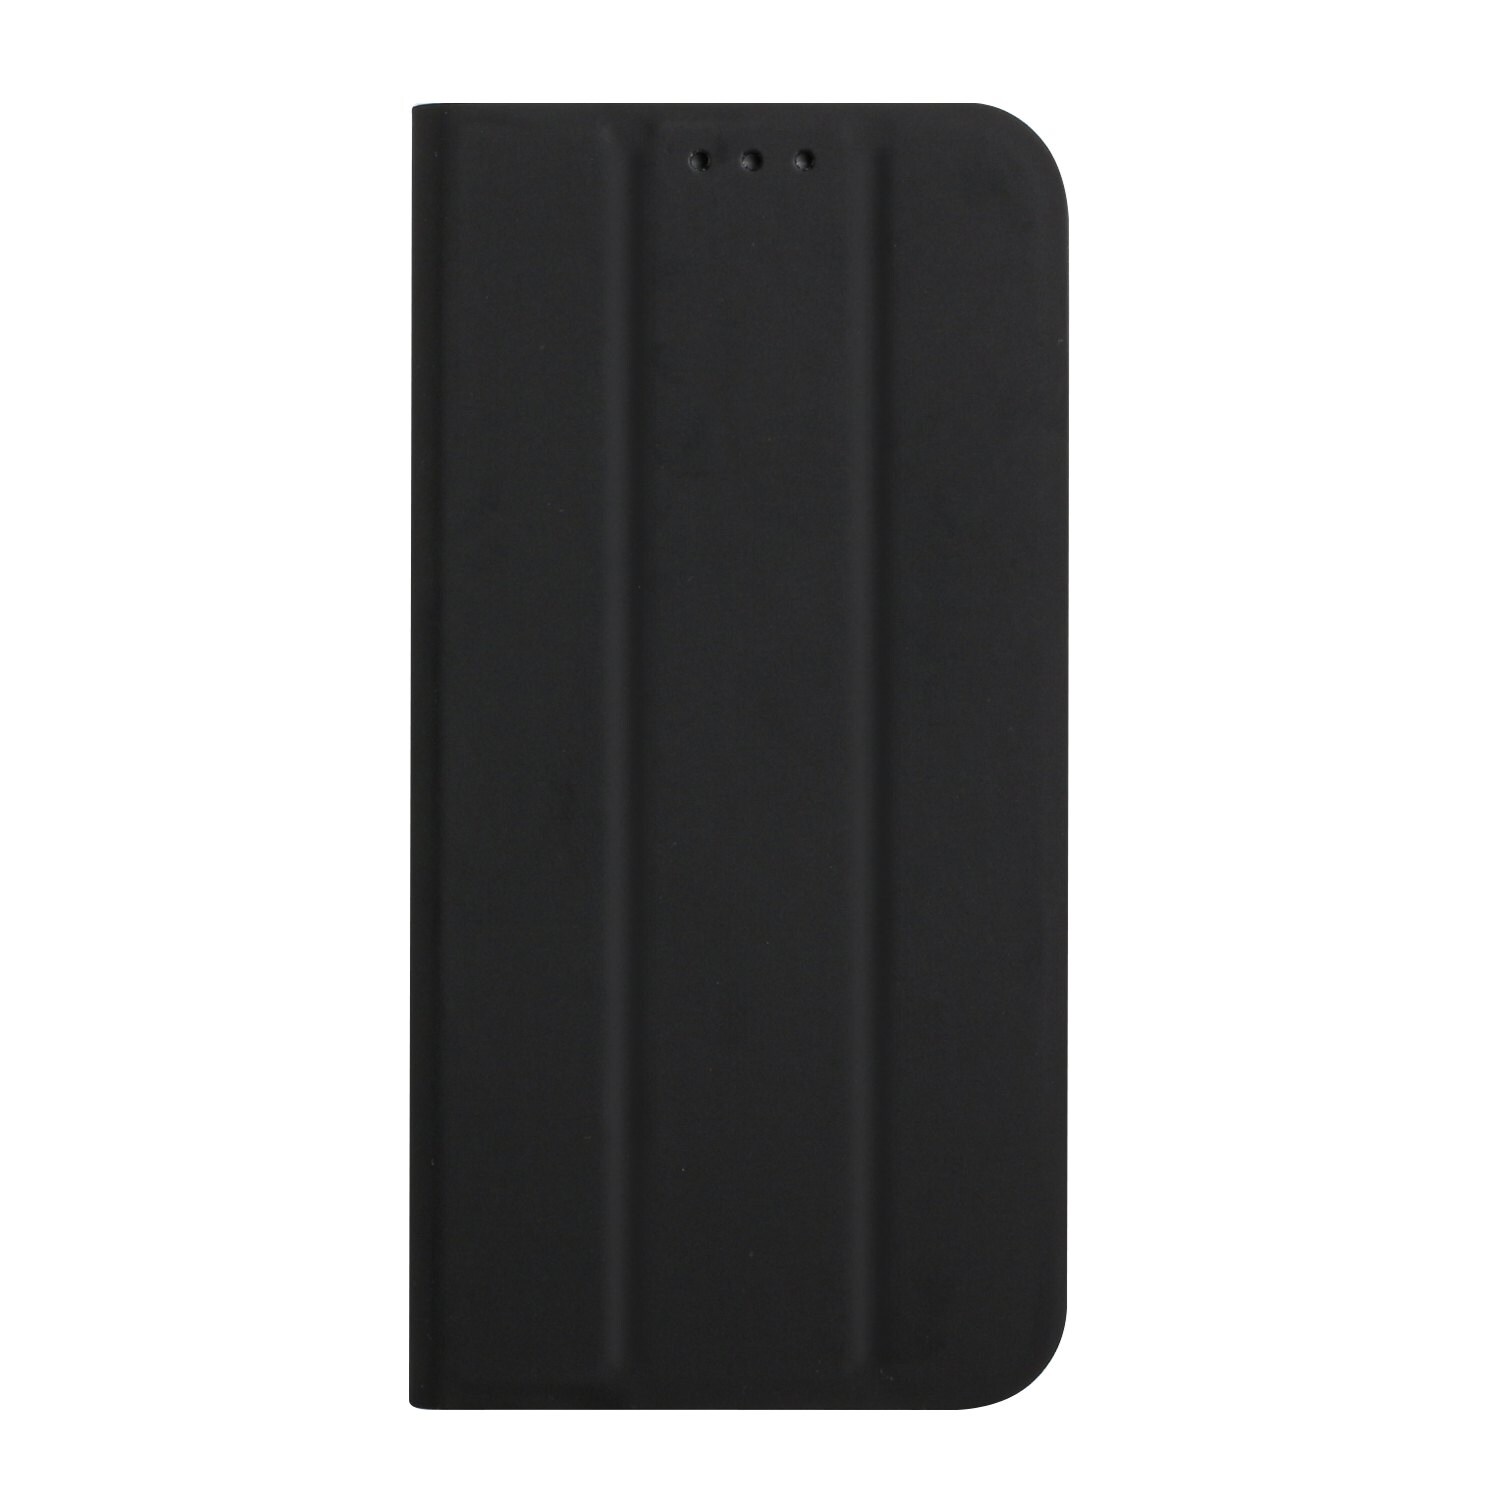 Erittäin ohut matkapuhelimen kuori pidikkeellä Samsung Galaxy A50 - Musta